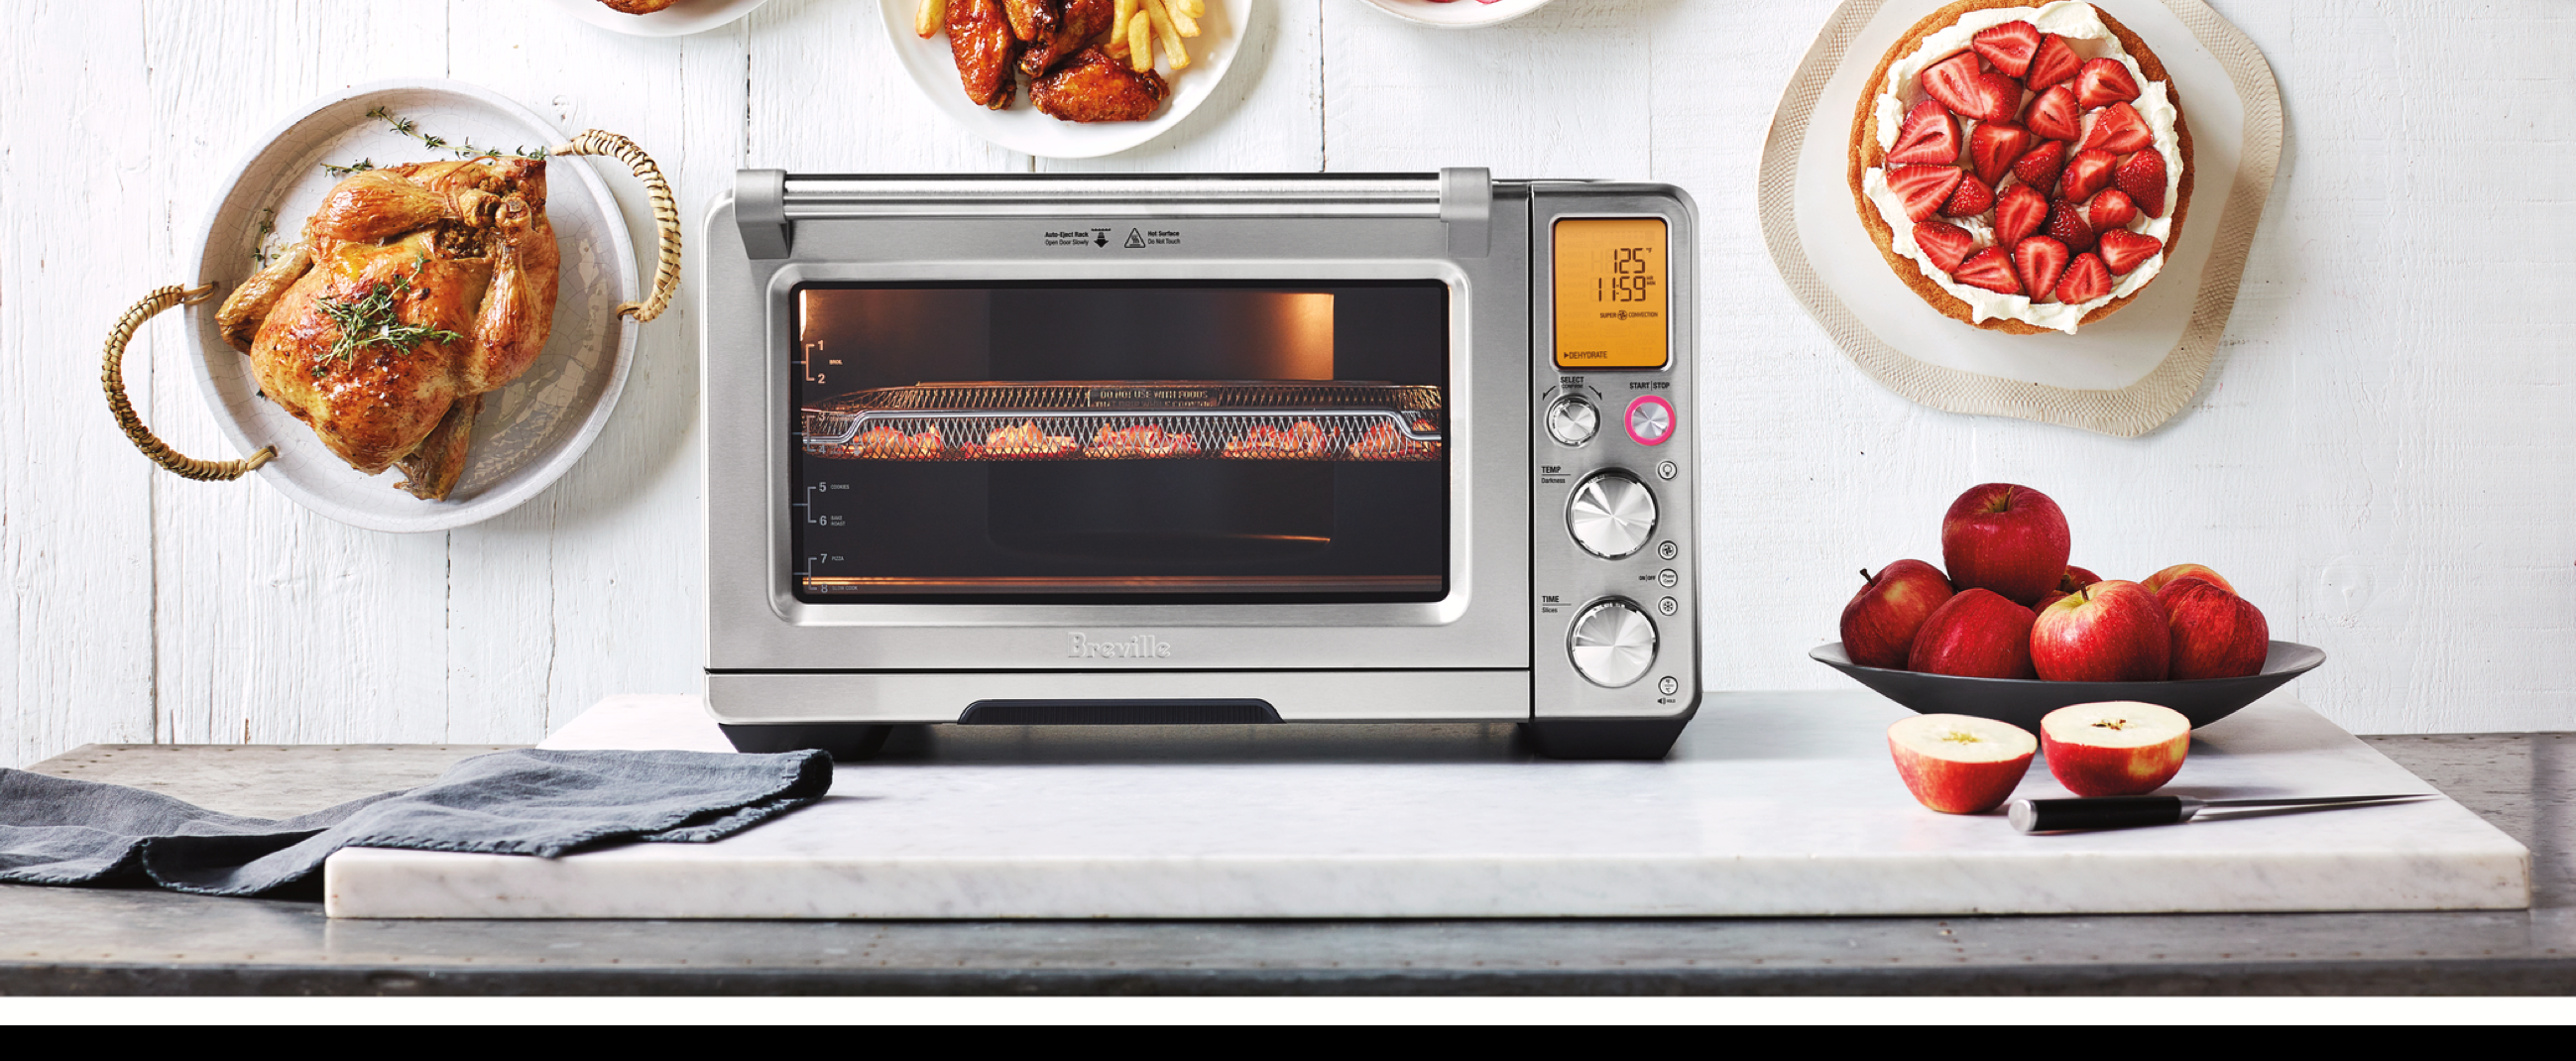 Breville Toaster Oven Comparison Chart Repan